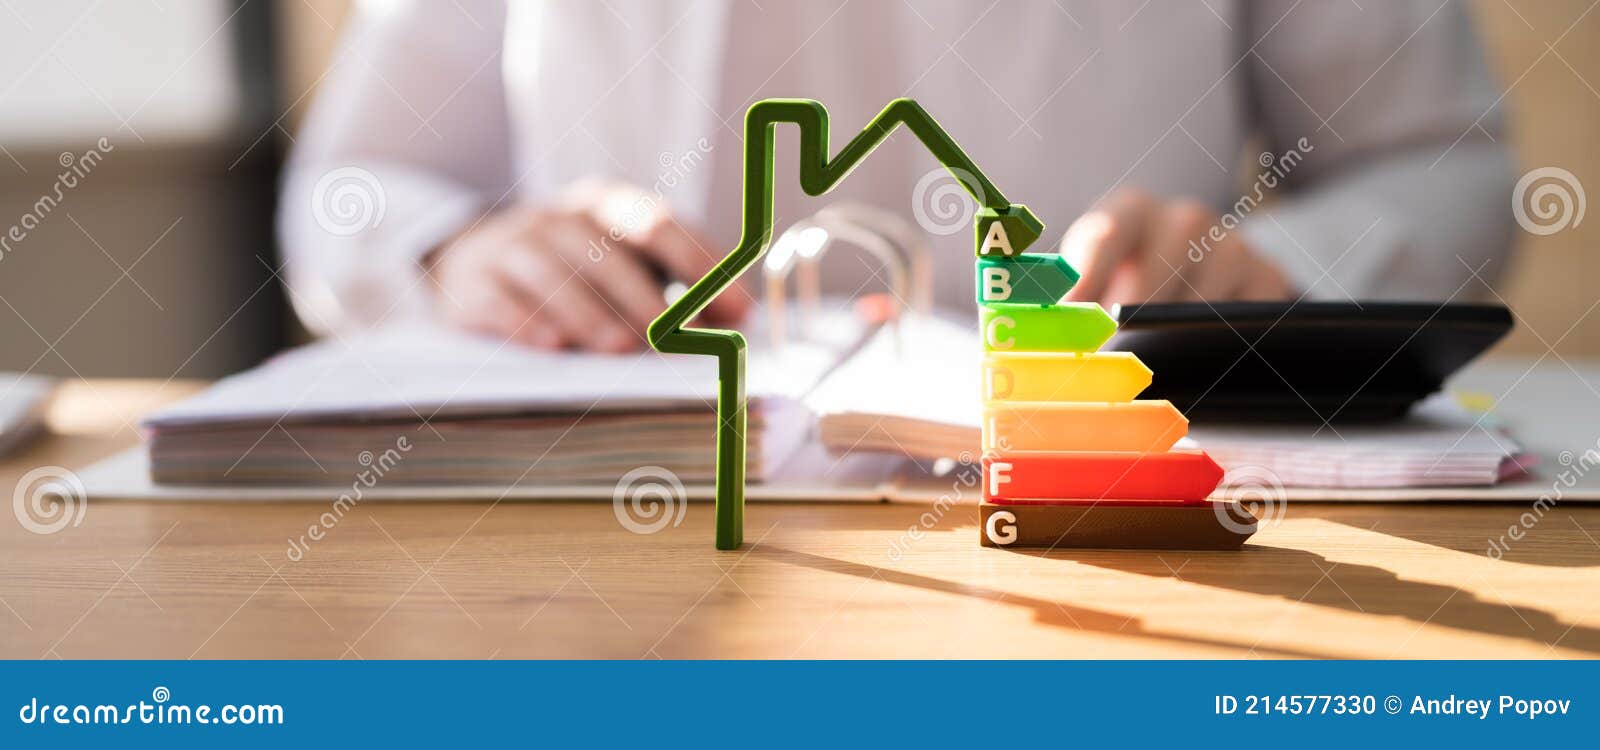 energy efficient house building audit